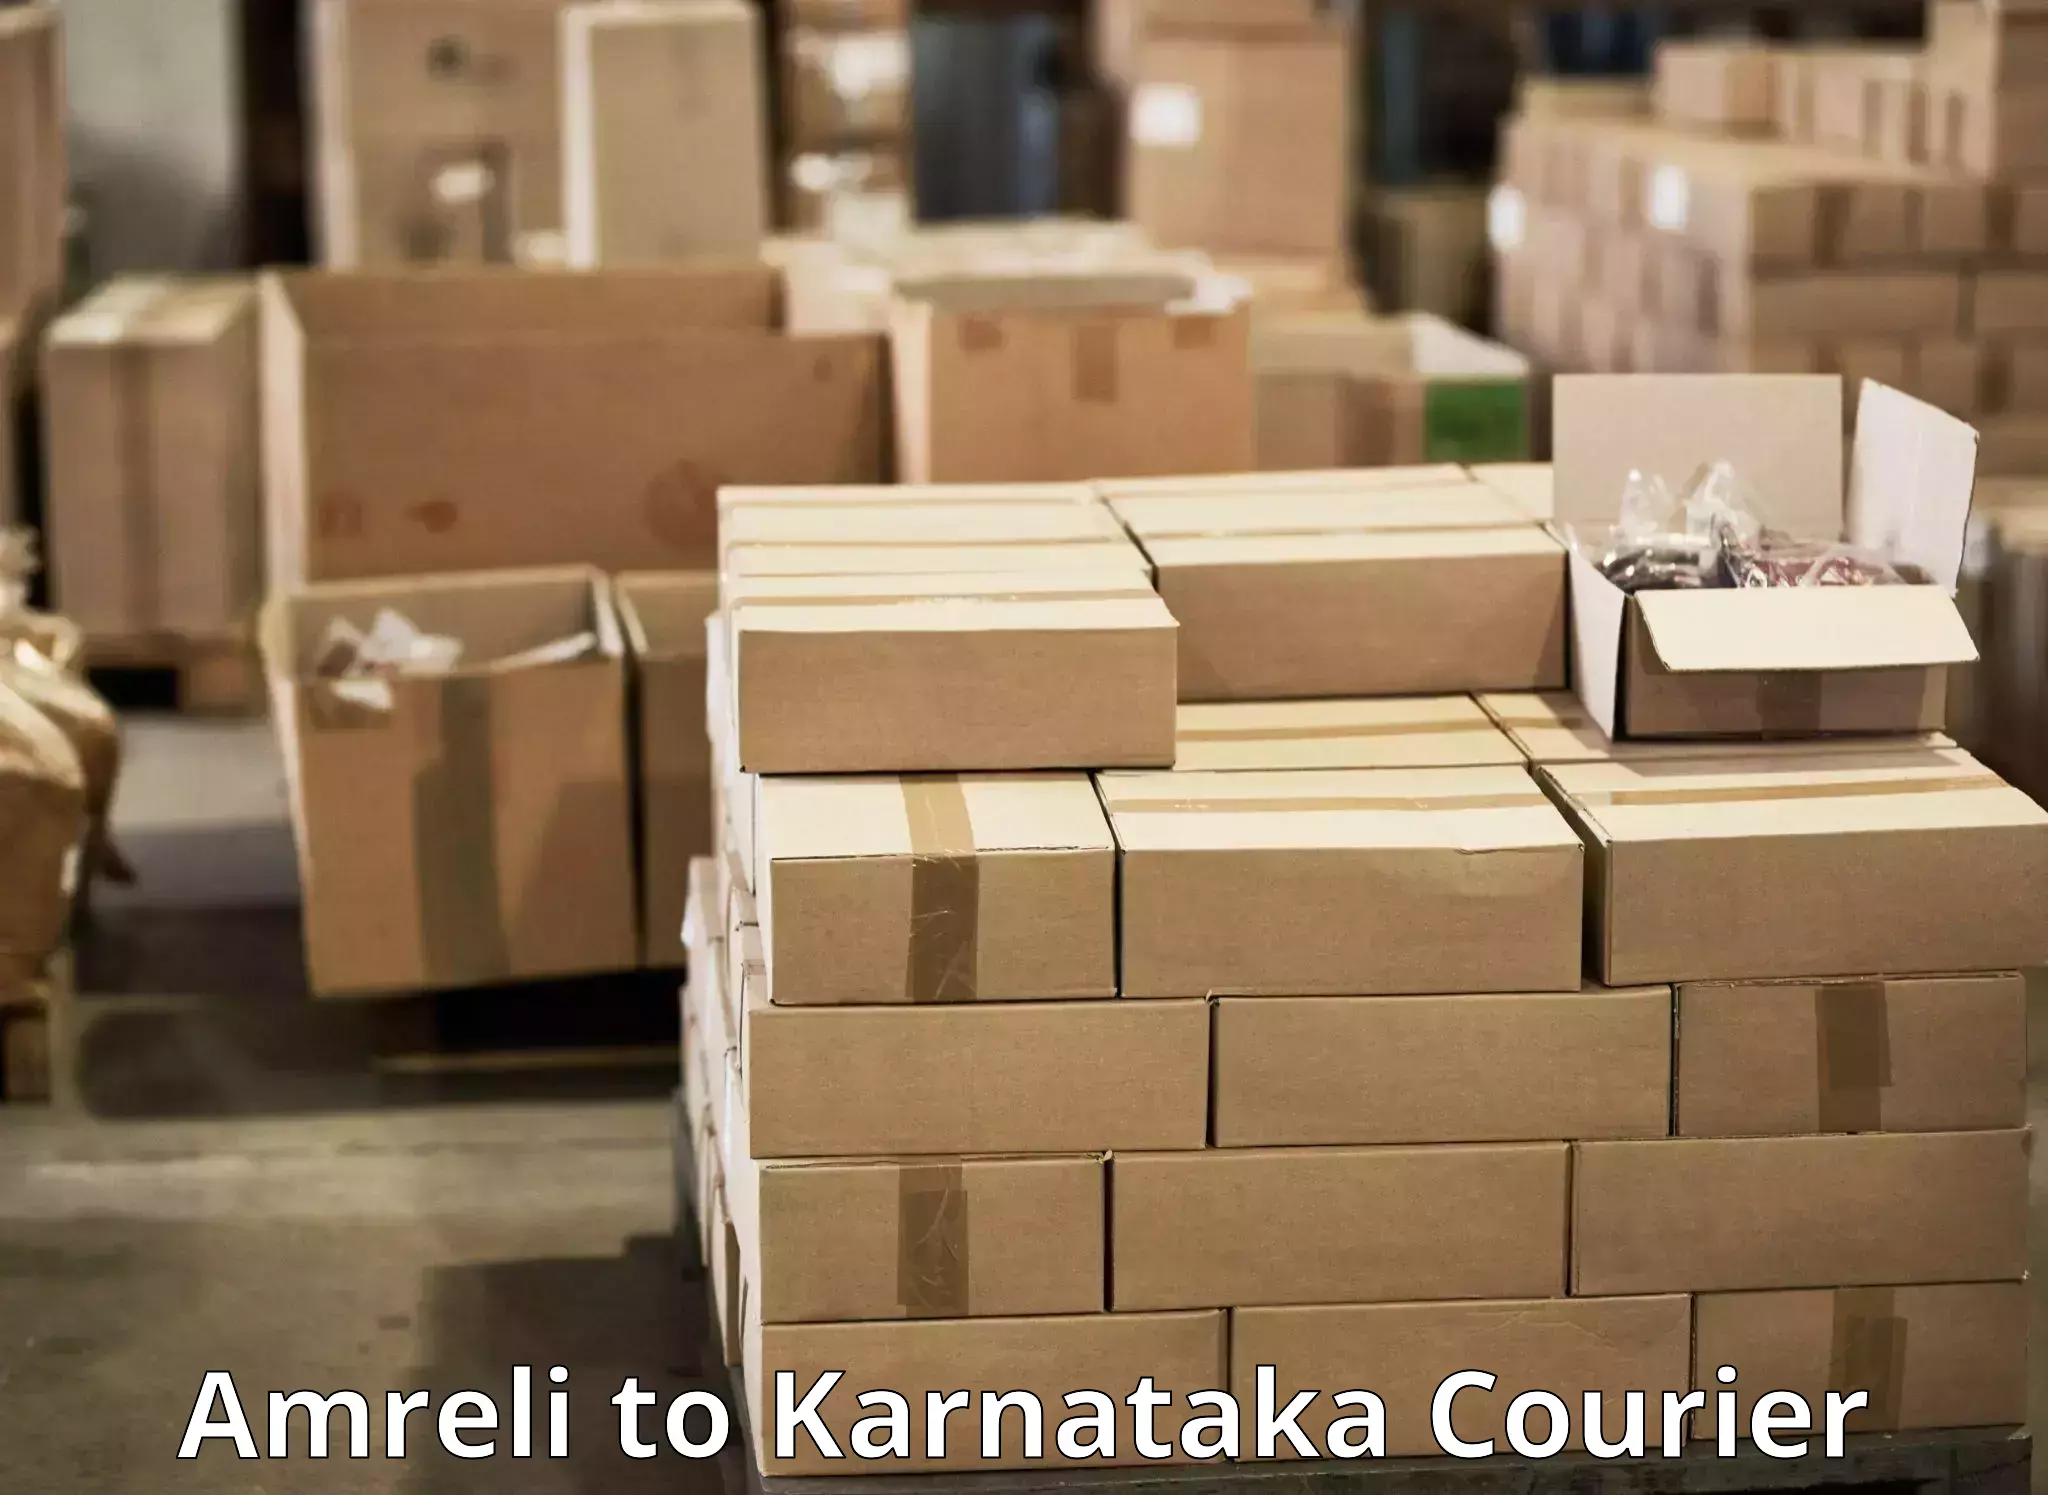 Express delivery capabilities Amreli to Kadaba